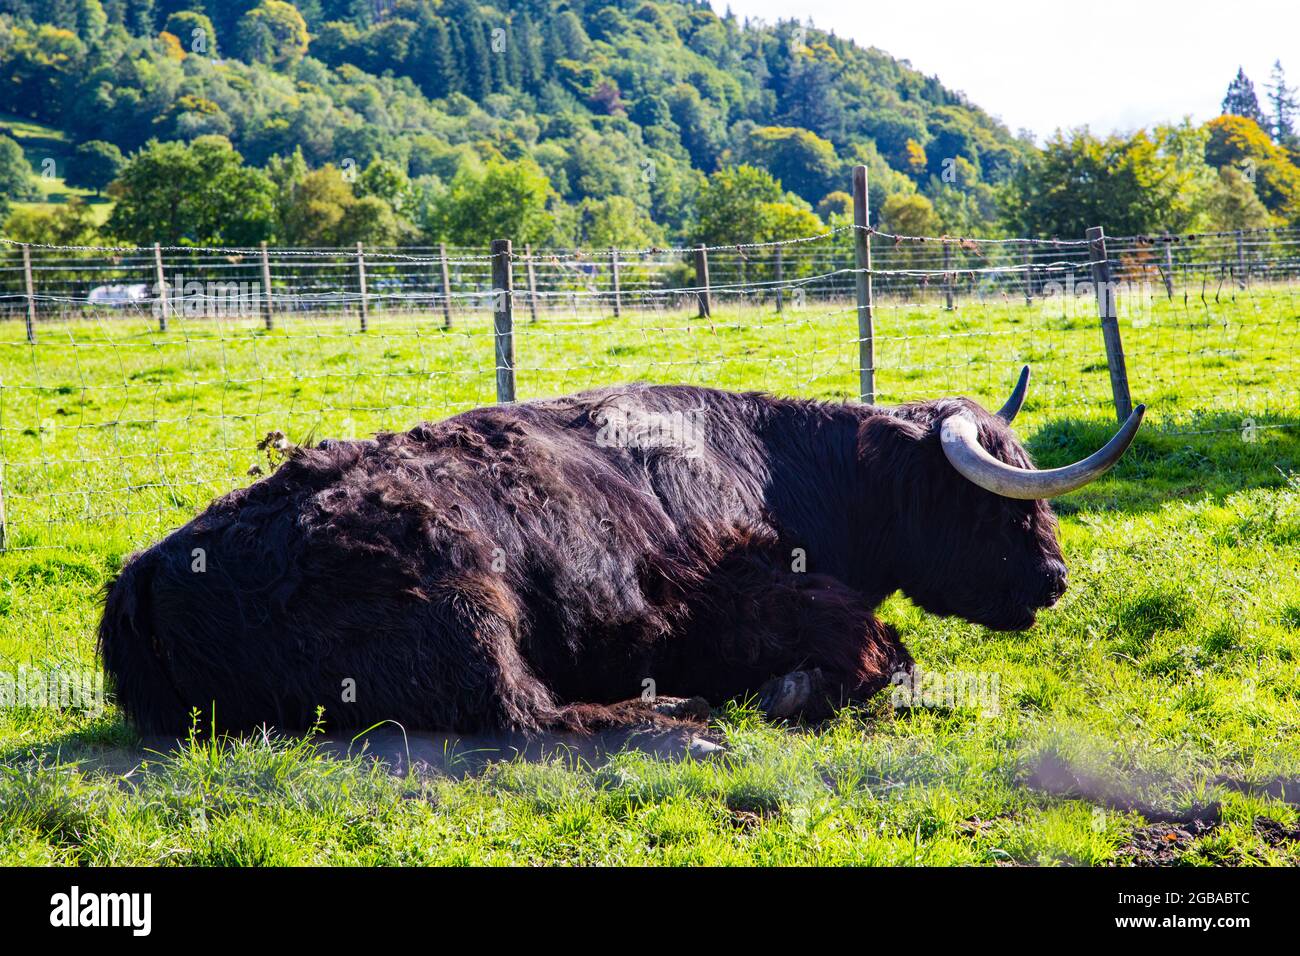 Típica vaca de pelo largo de las tierras altas escocesas Foto de stock